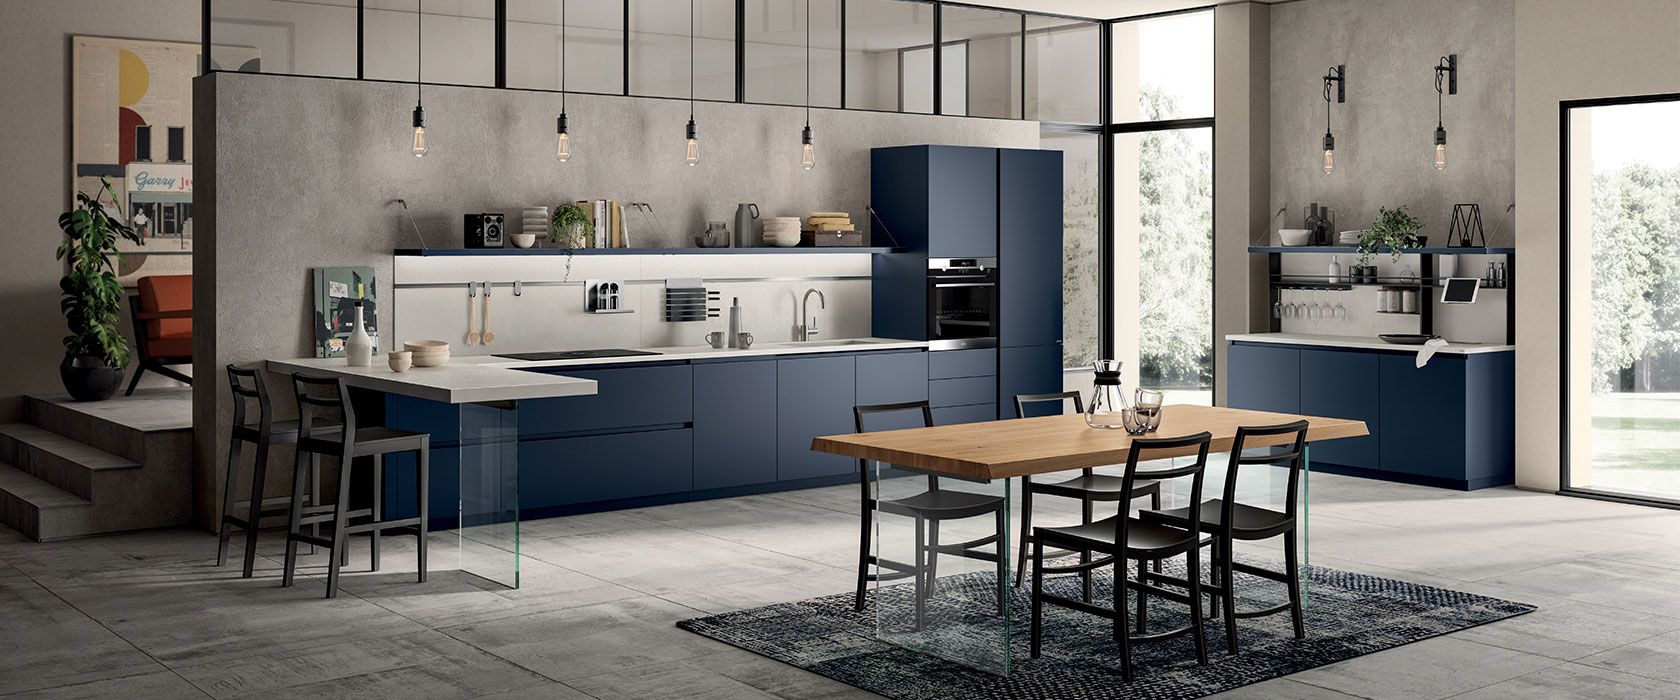 طراحی کابینت مدرن آشپزخانه 2019